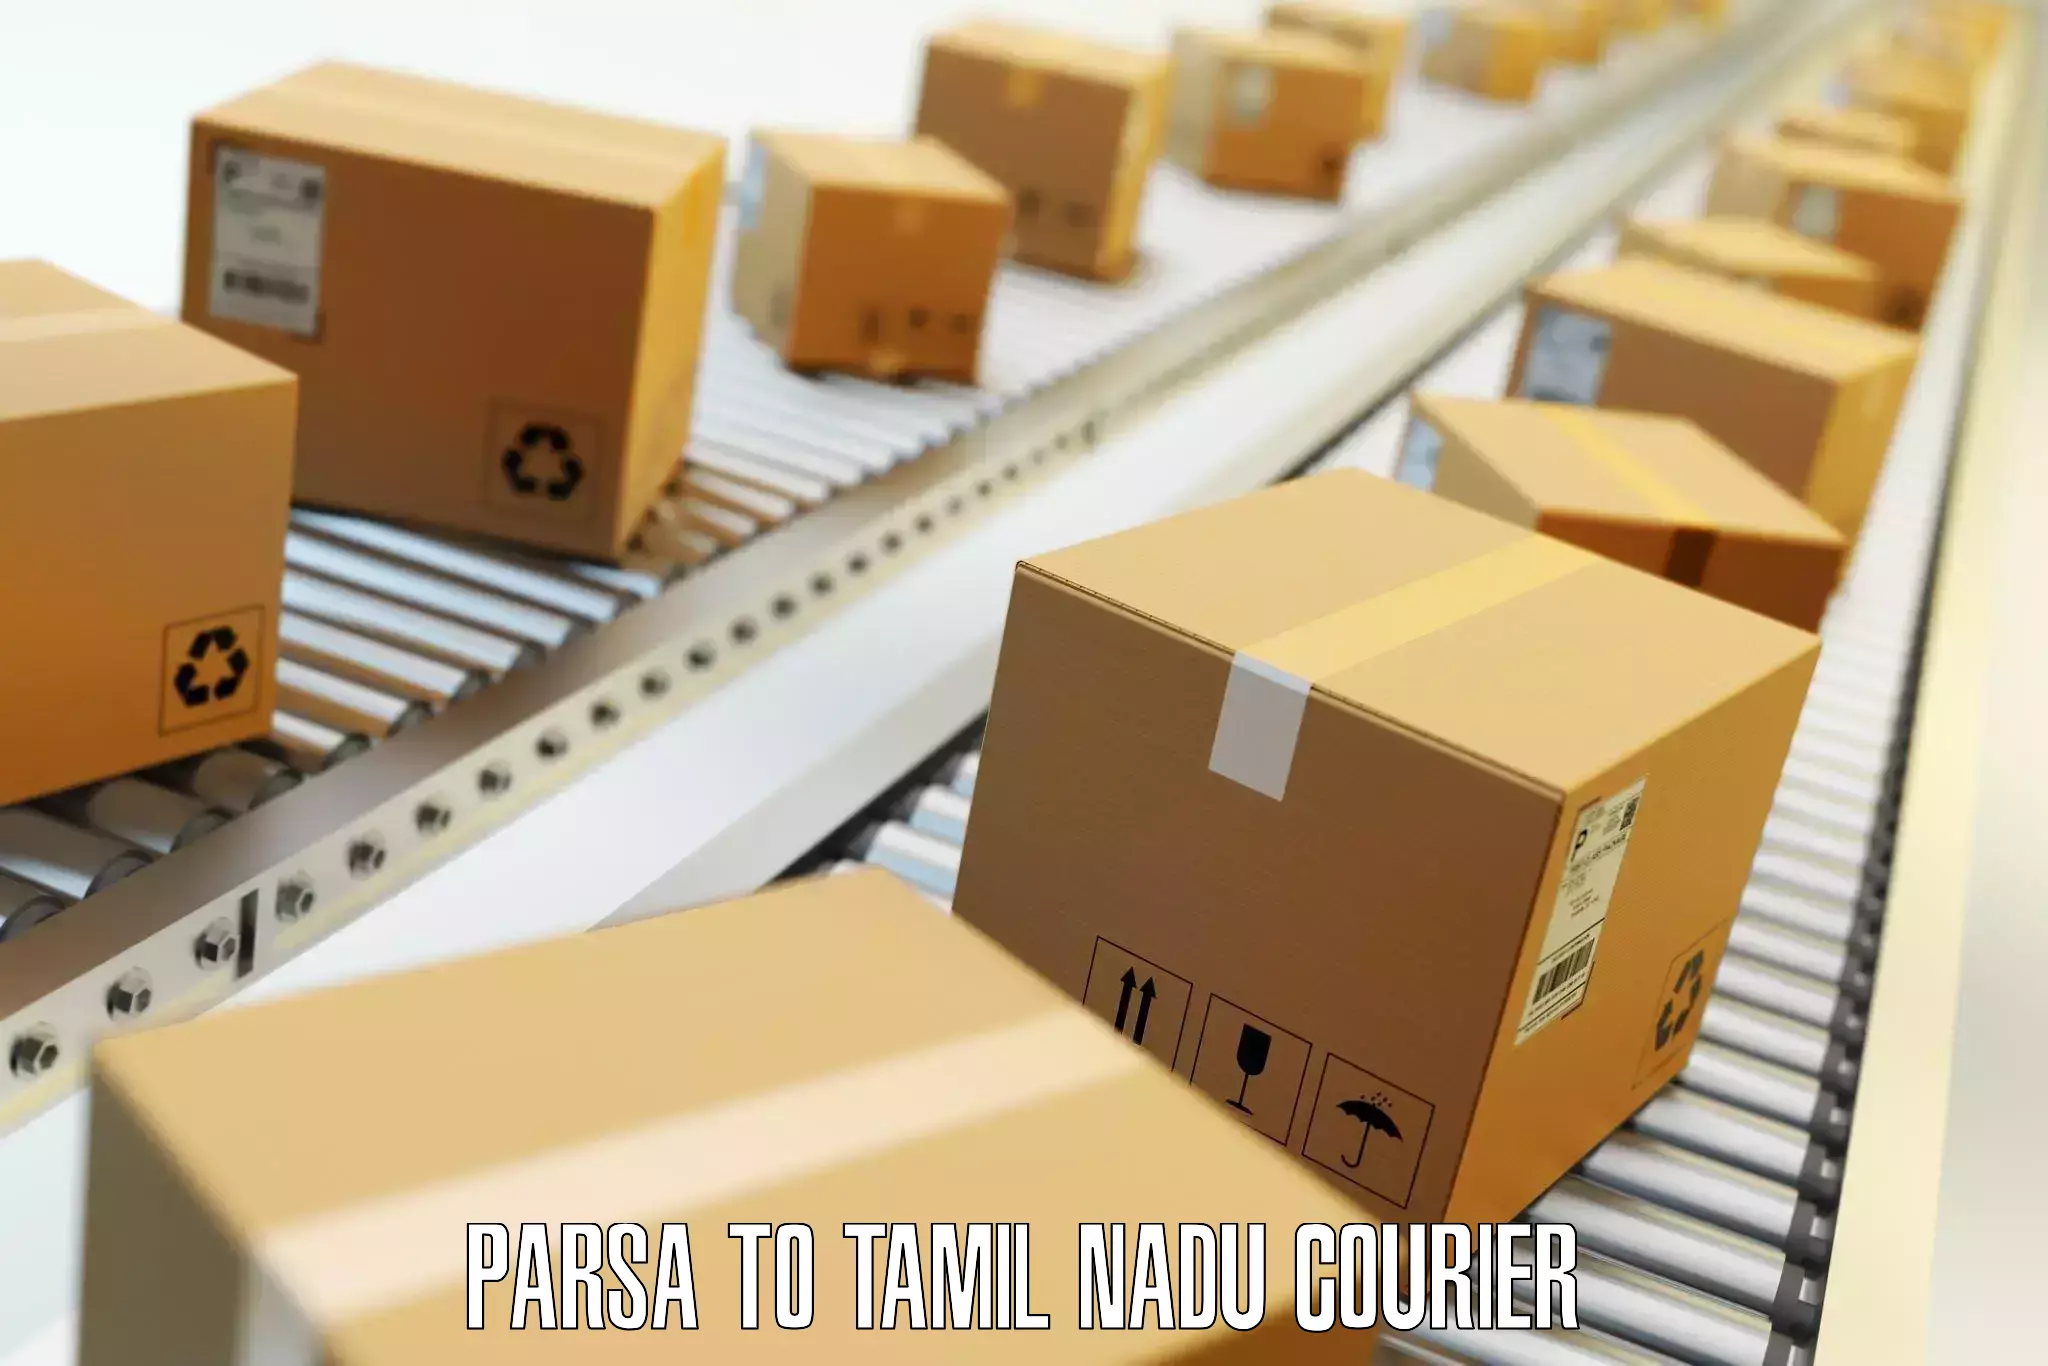 Luggage transit service Parsa to Tamil Nadu